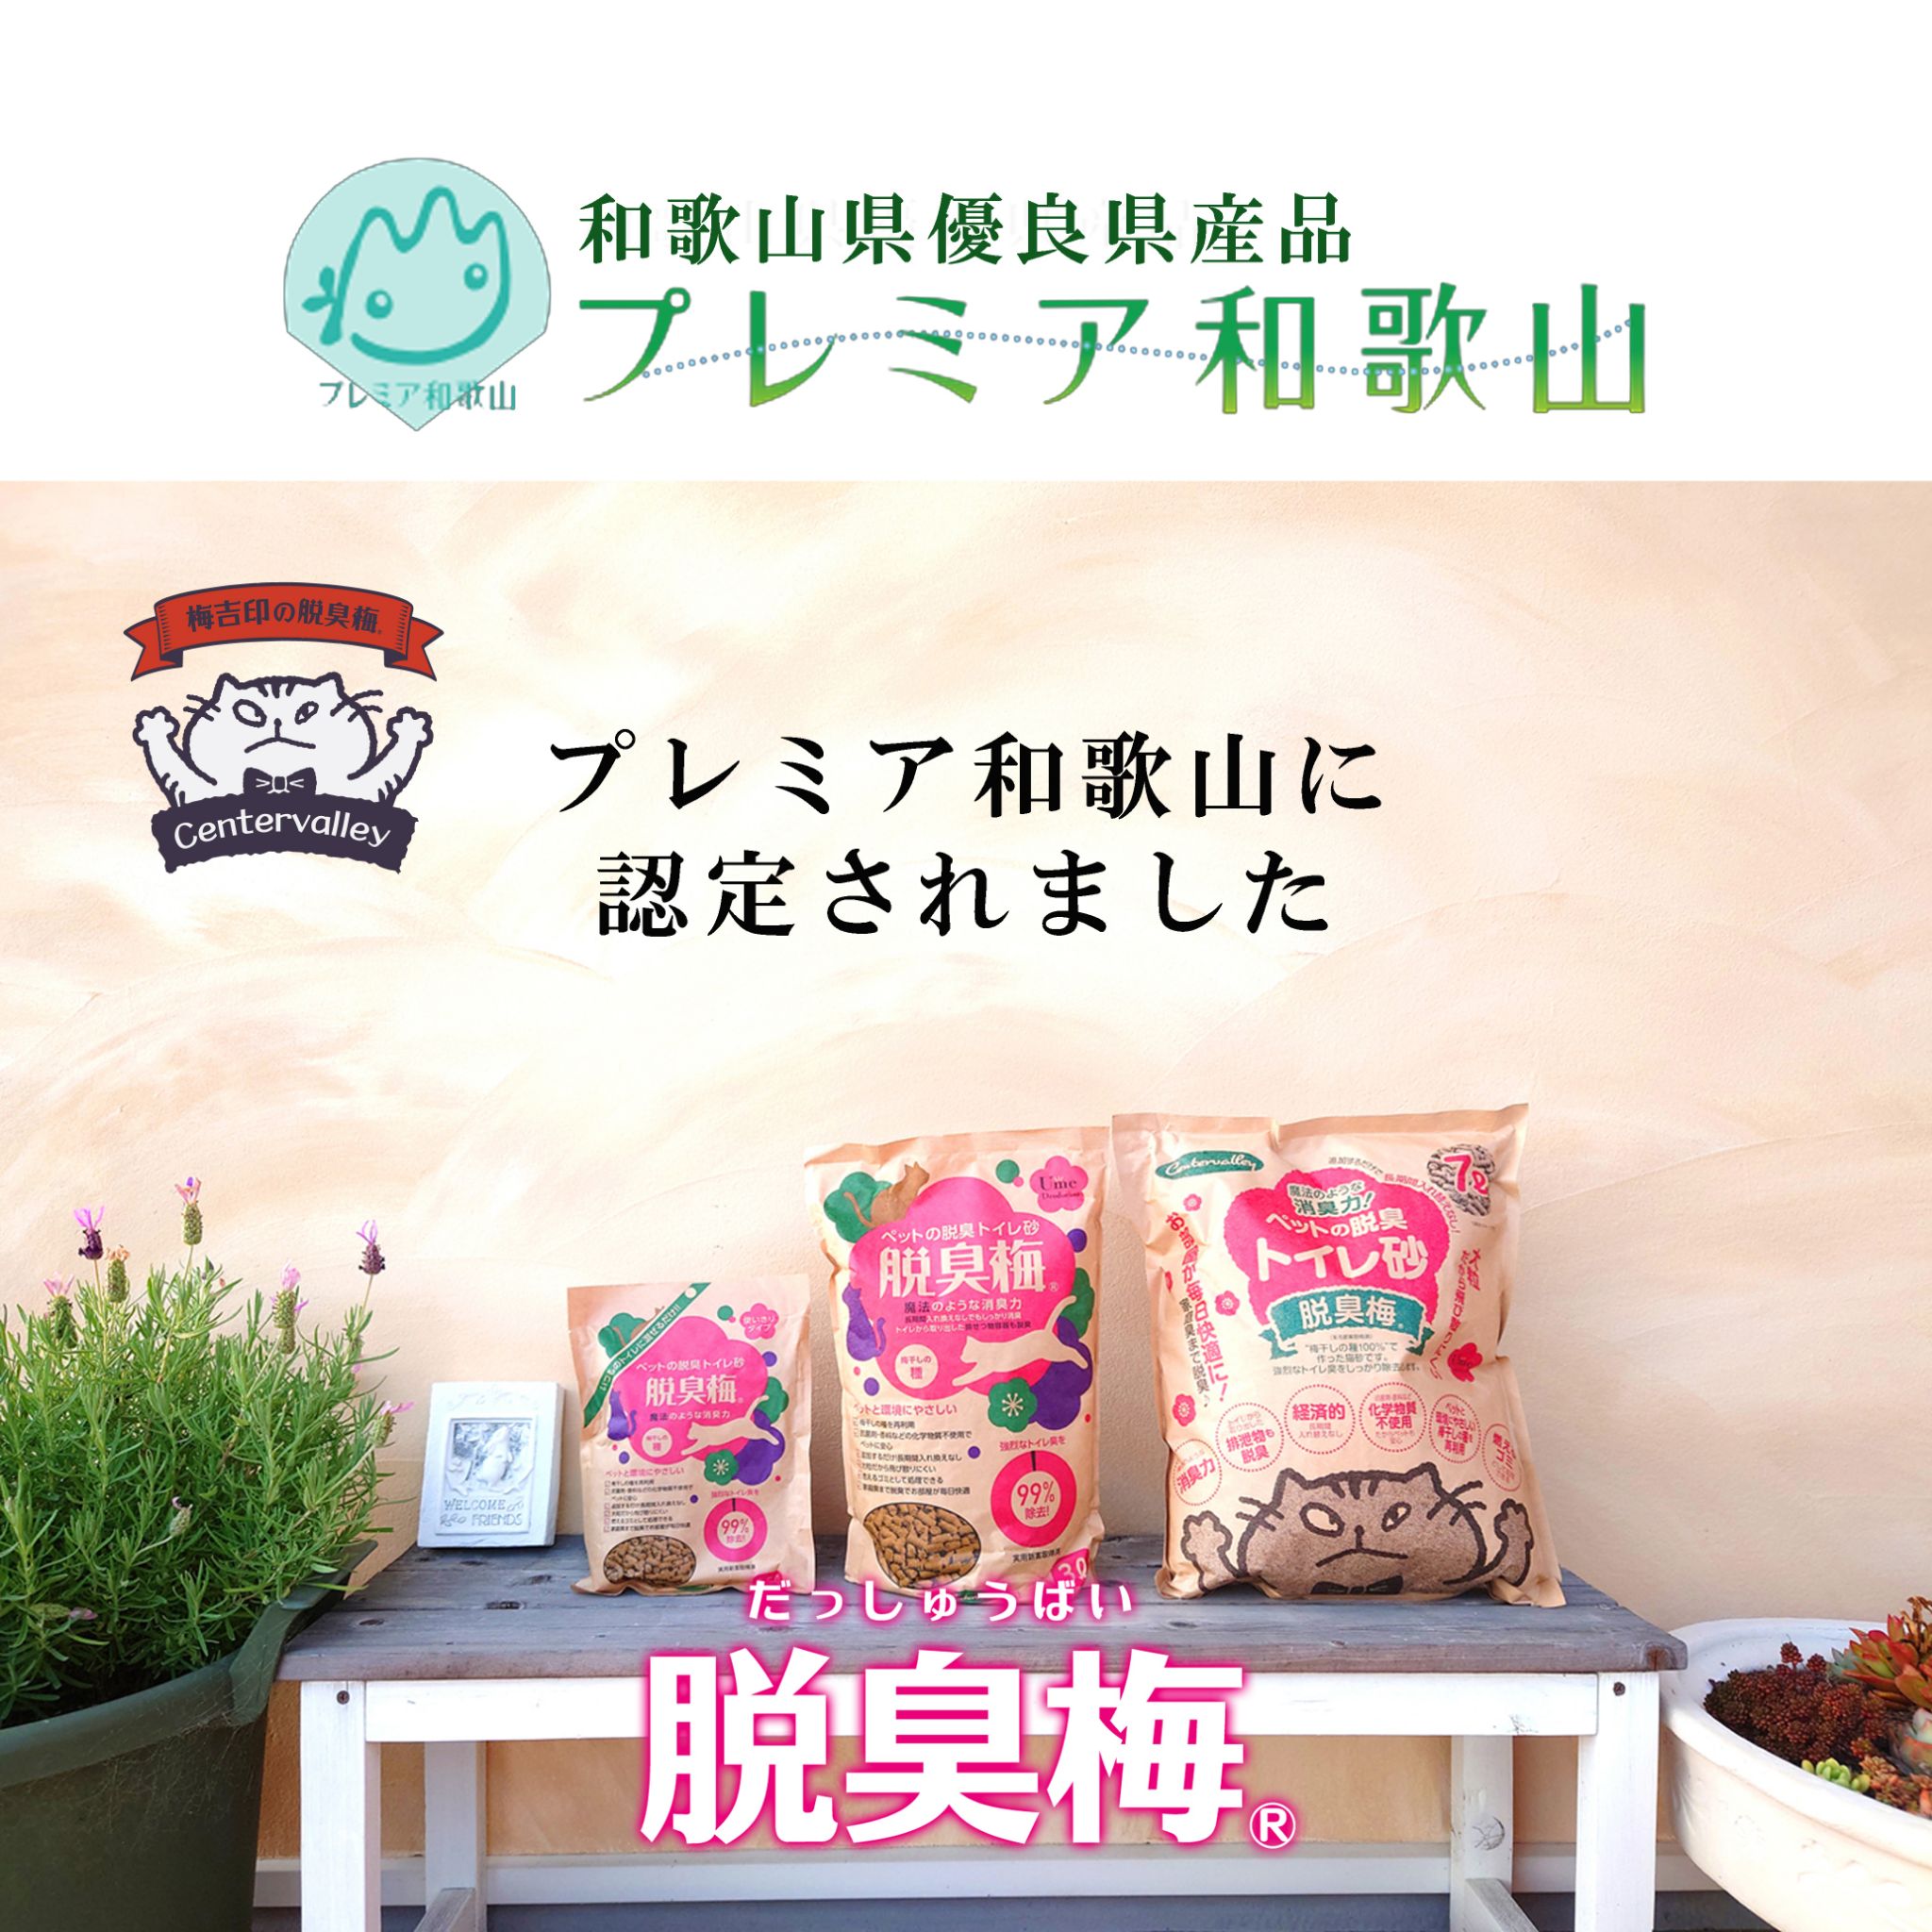 梅吉印の脱臭梅が
和歌山県優良県産品 「プレミア和歌山」に認定されました